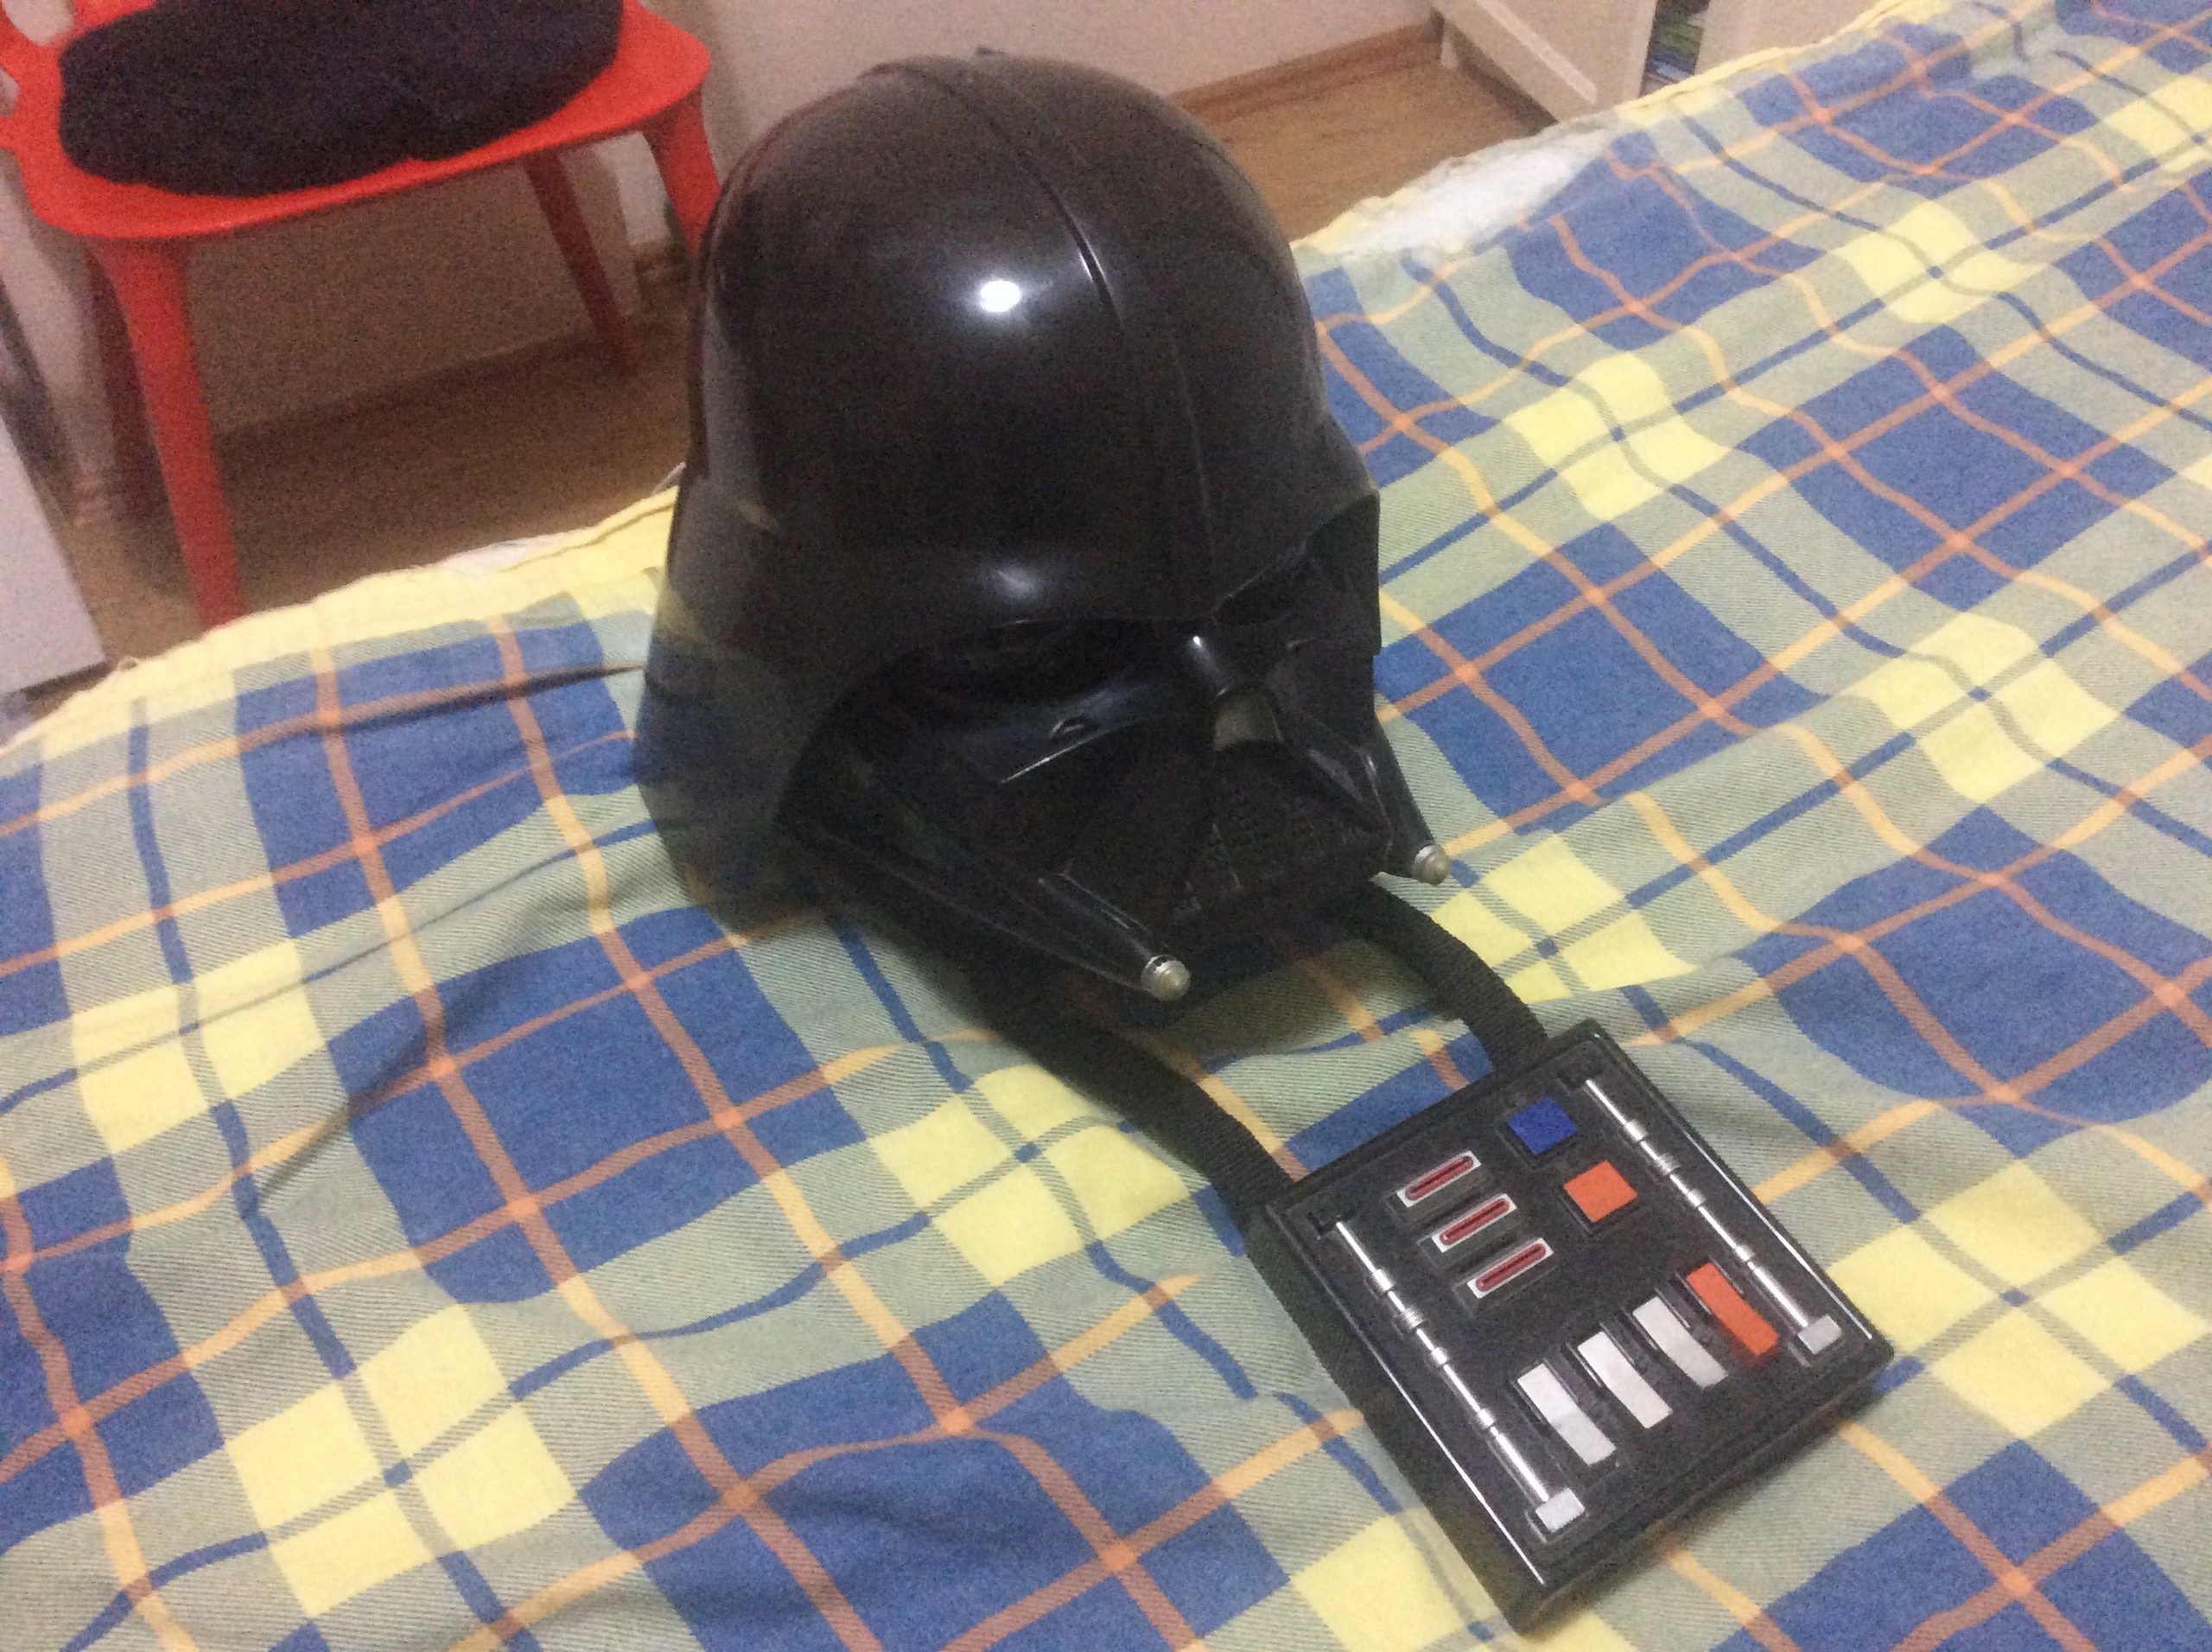  Darth Vader kaskı nerden bulabilirim ?